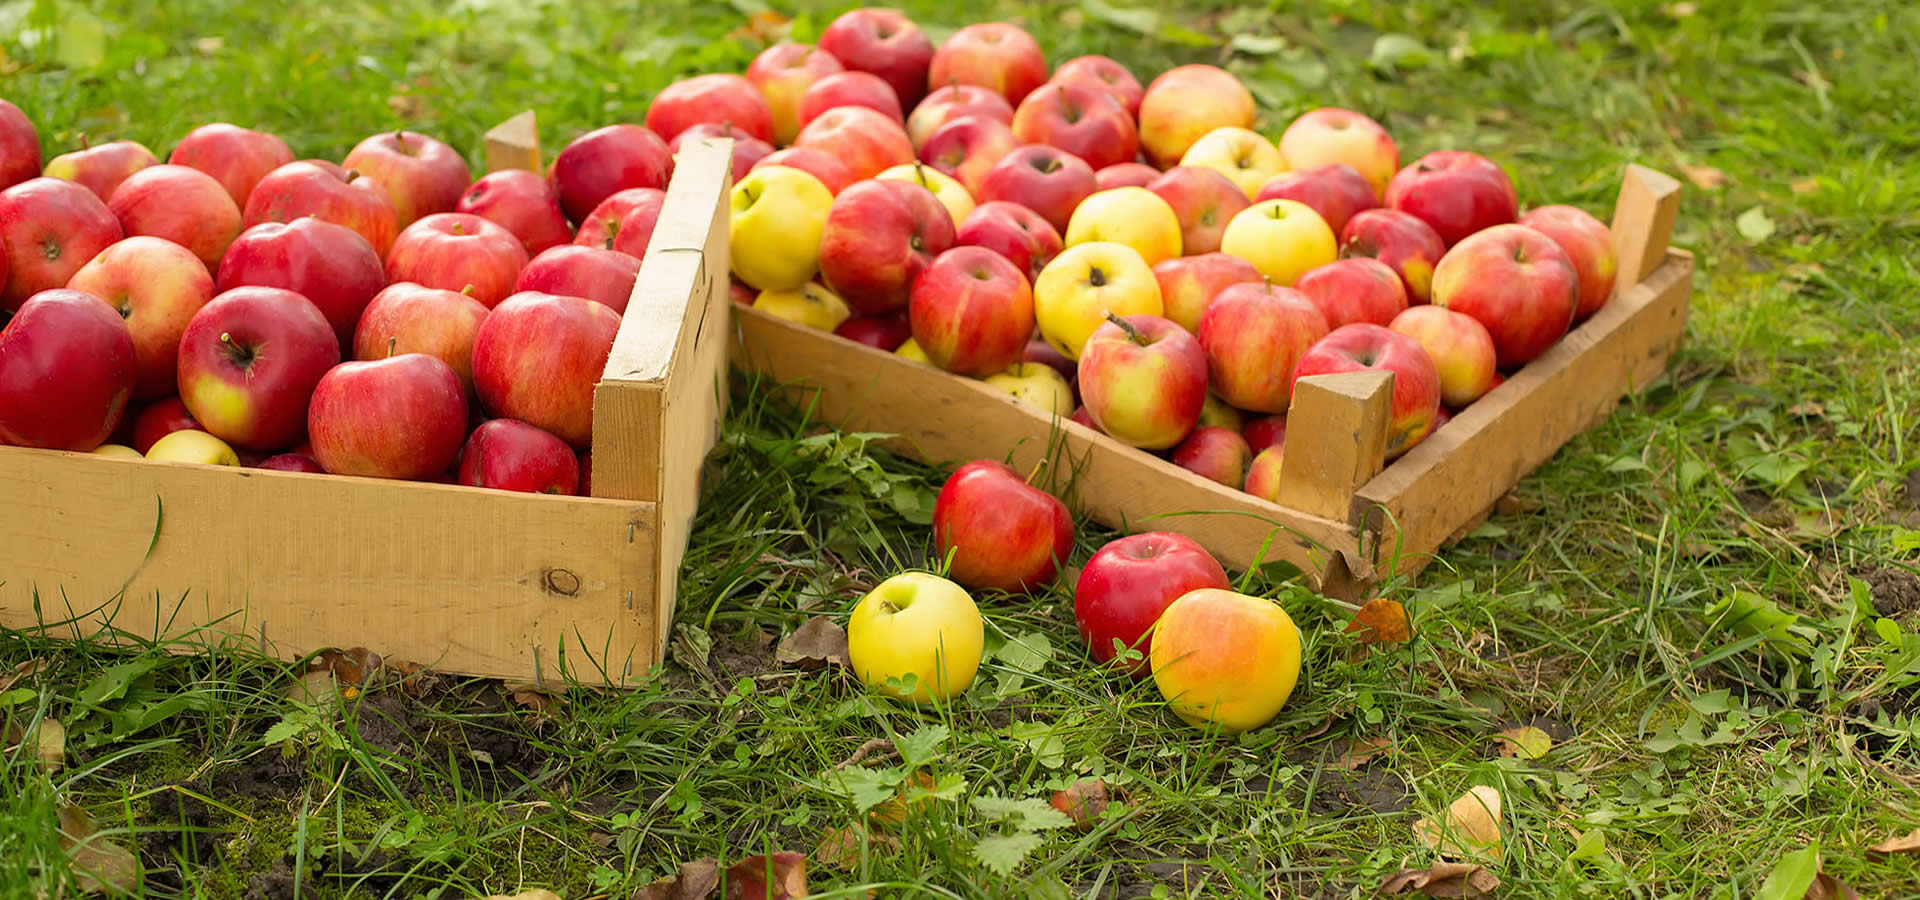 Leckere Äpfel und mehr Kernobst aus dem Alten Land